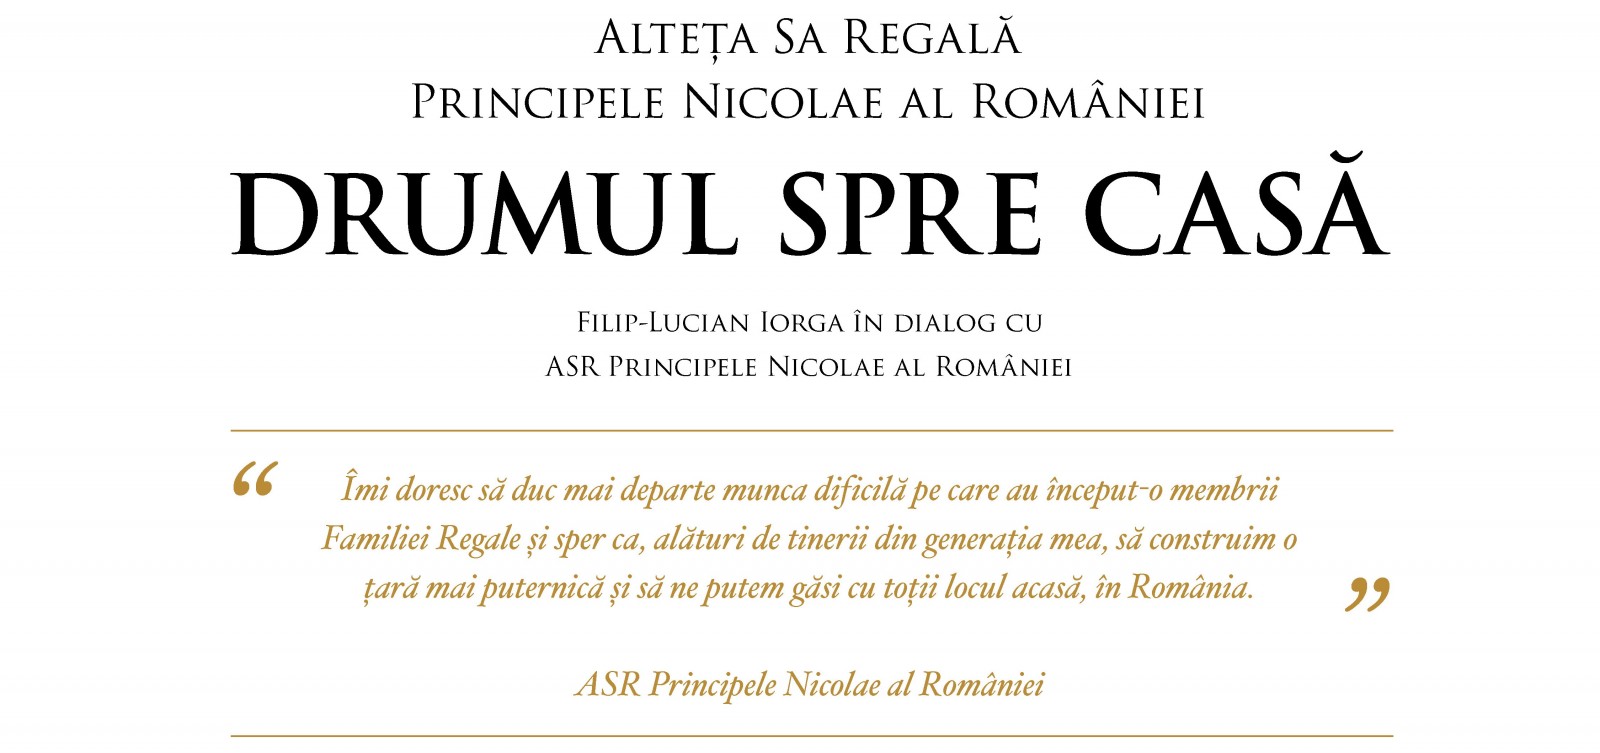 Principele Nicolae al României, lansare de carte la Târgu Mureș